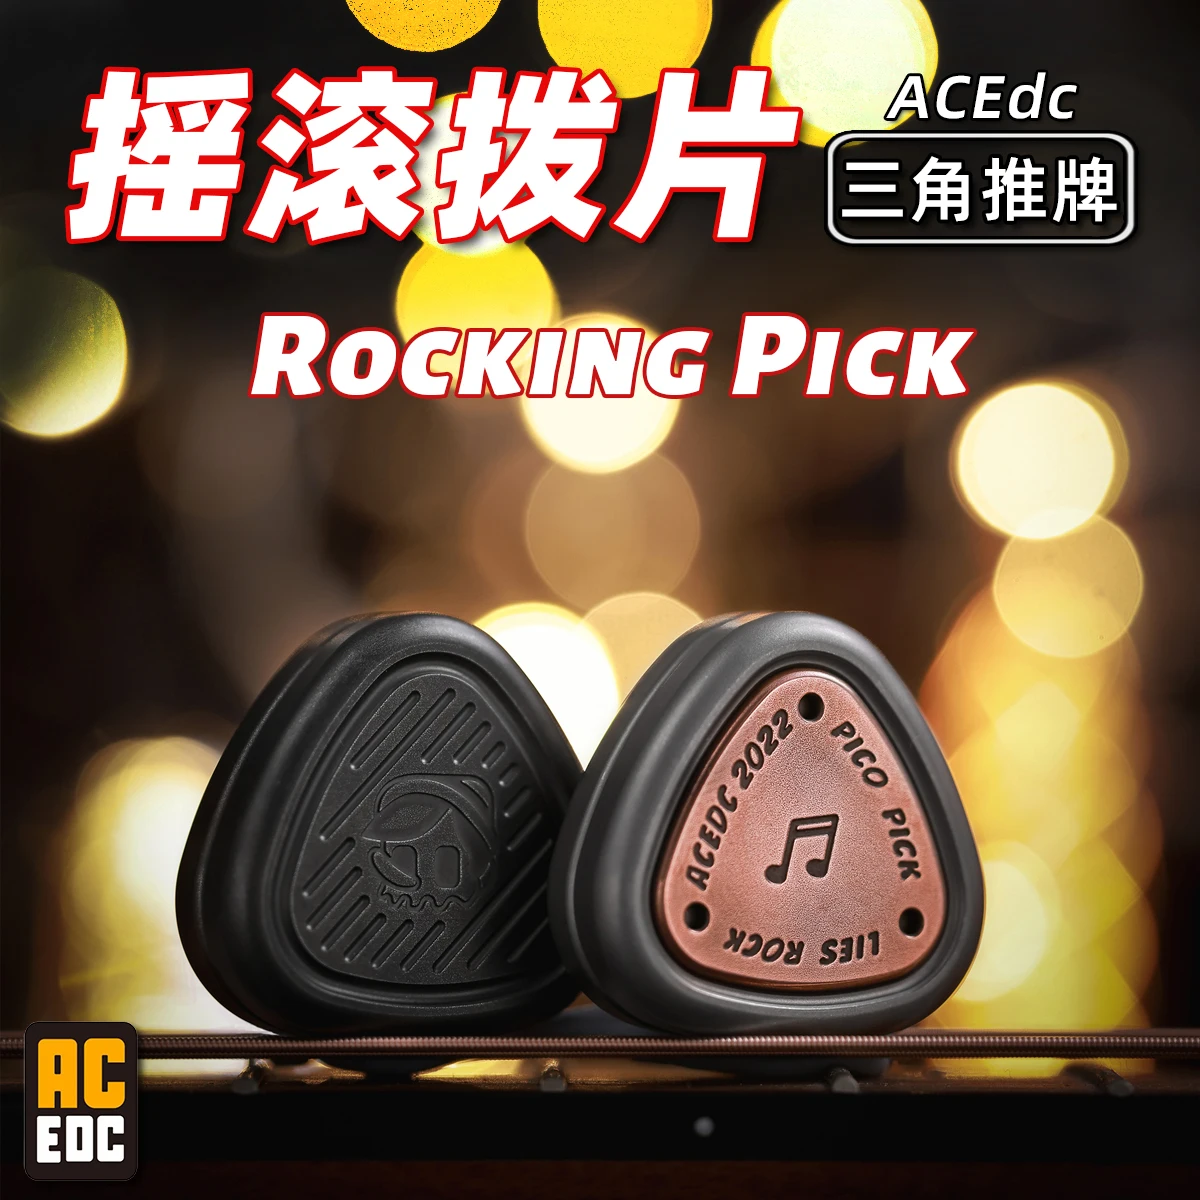 

ACEdc оригинальный треугольный Магнитный push EDC черный технология игрушка для декомпрессии гироскоп пальцев ломал монеты.